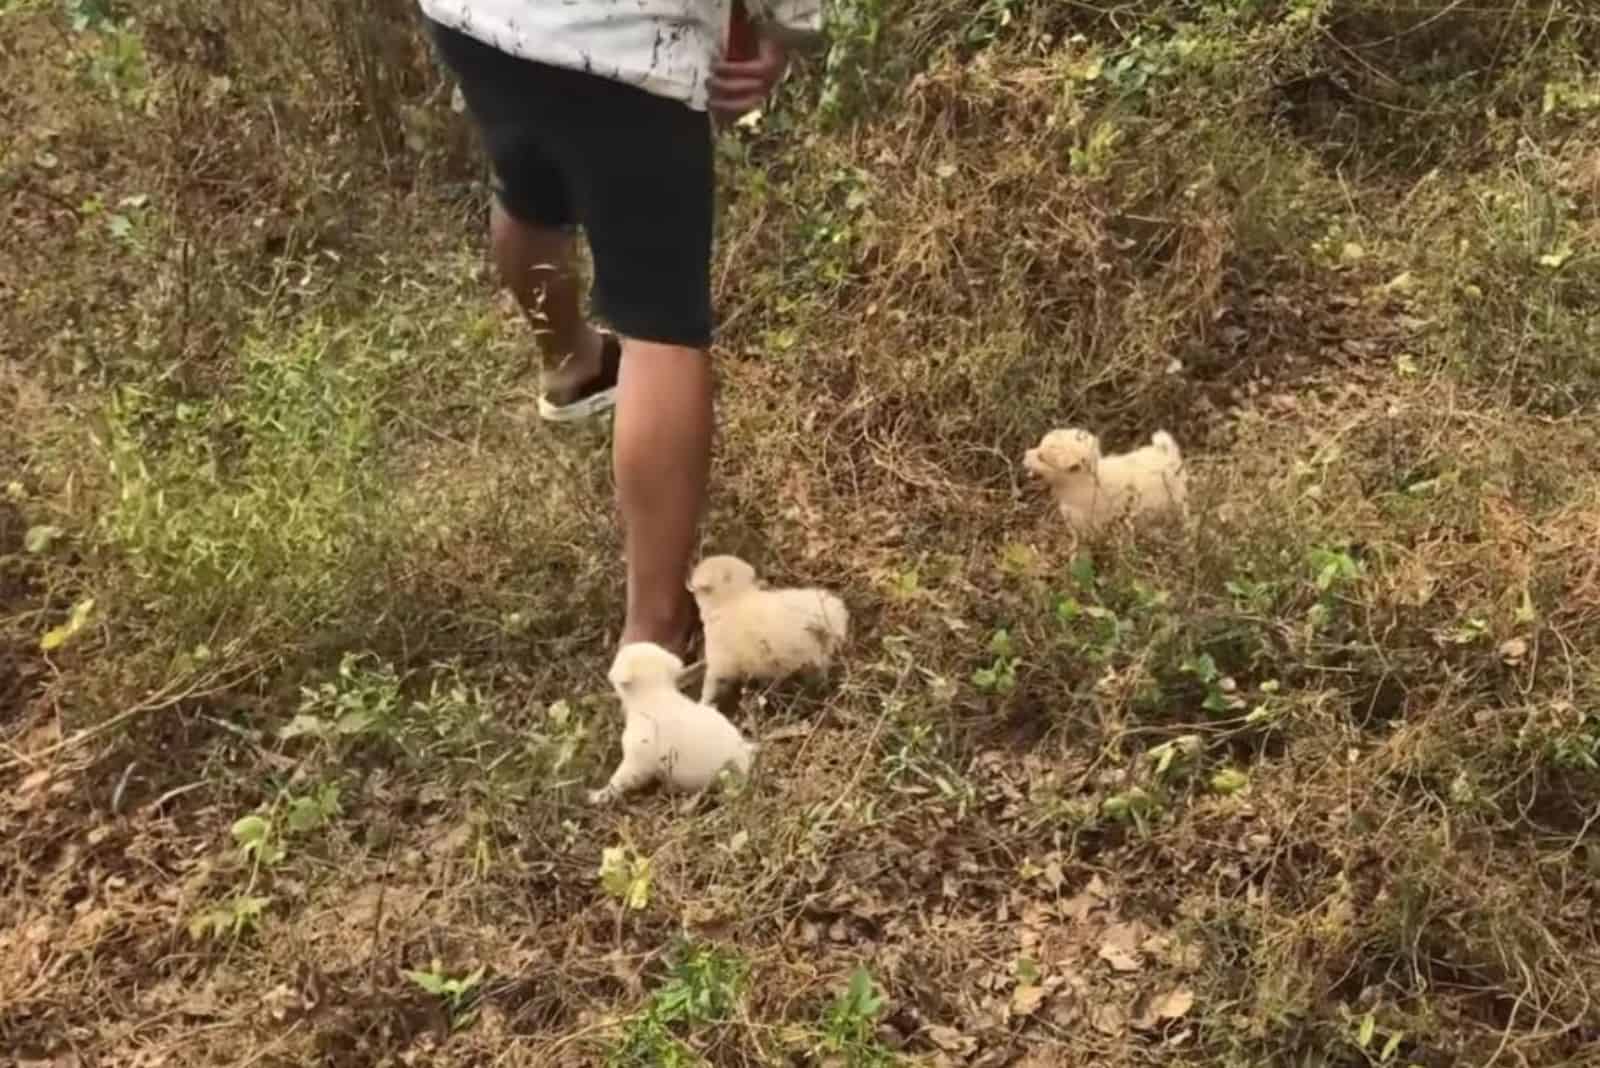 puppies walking around a man that found them